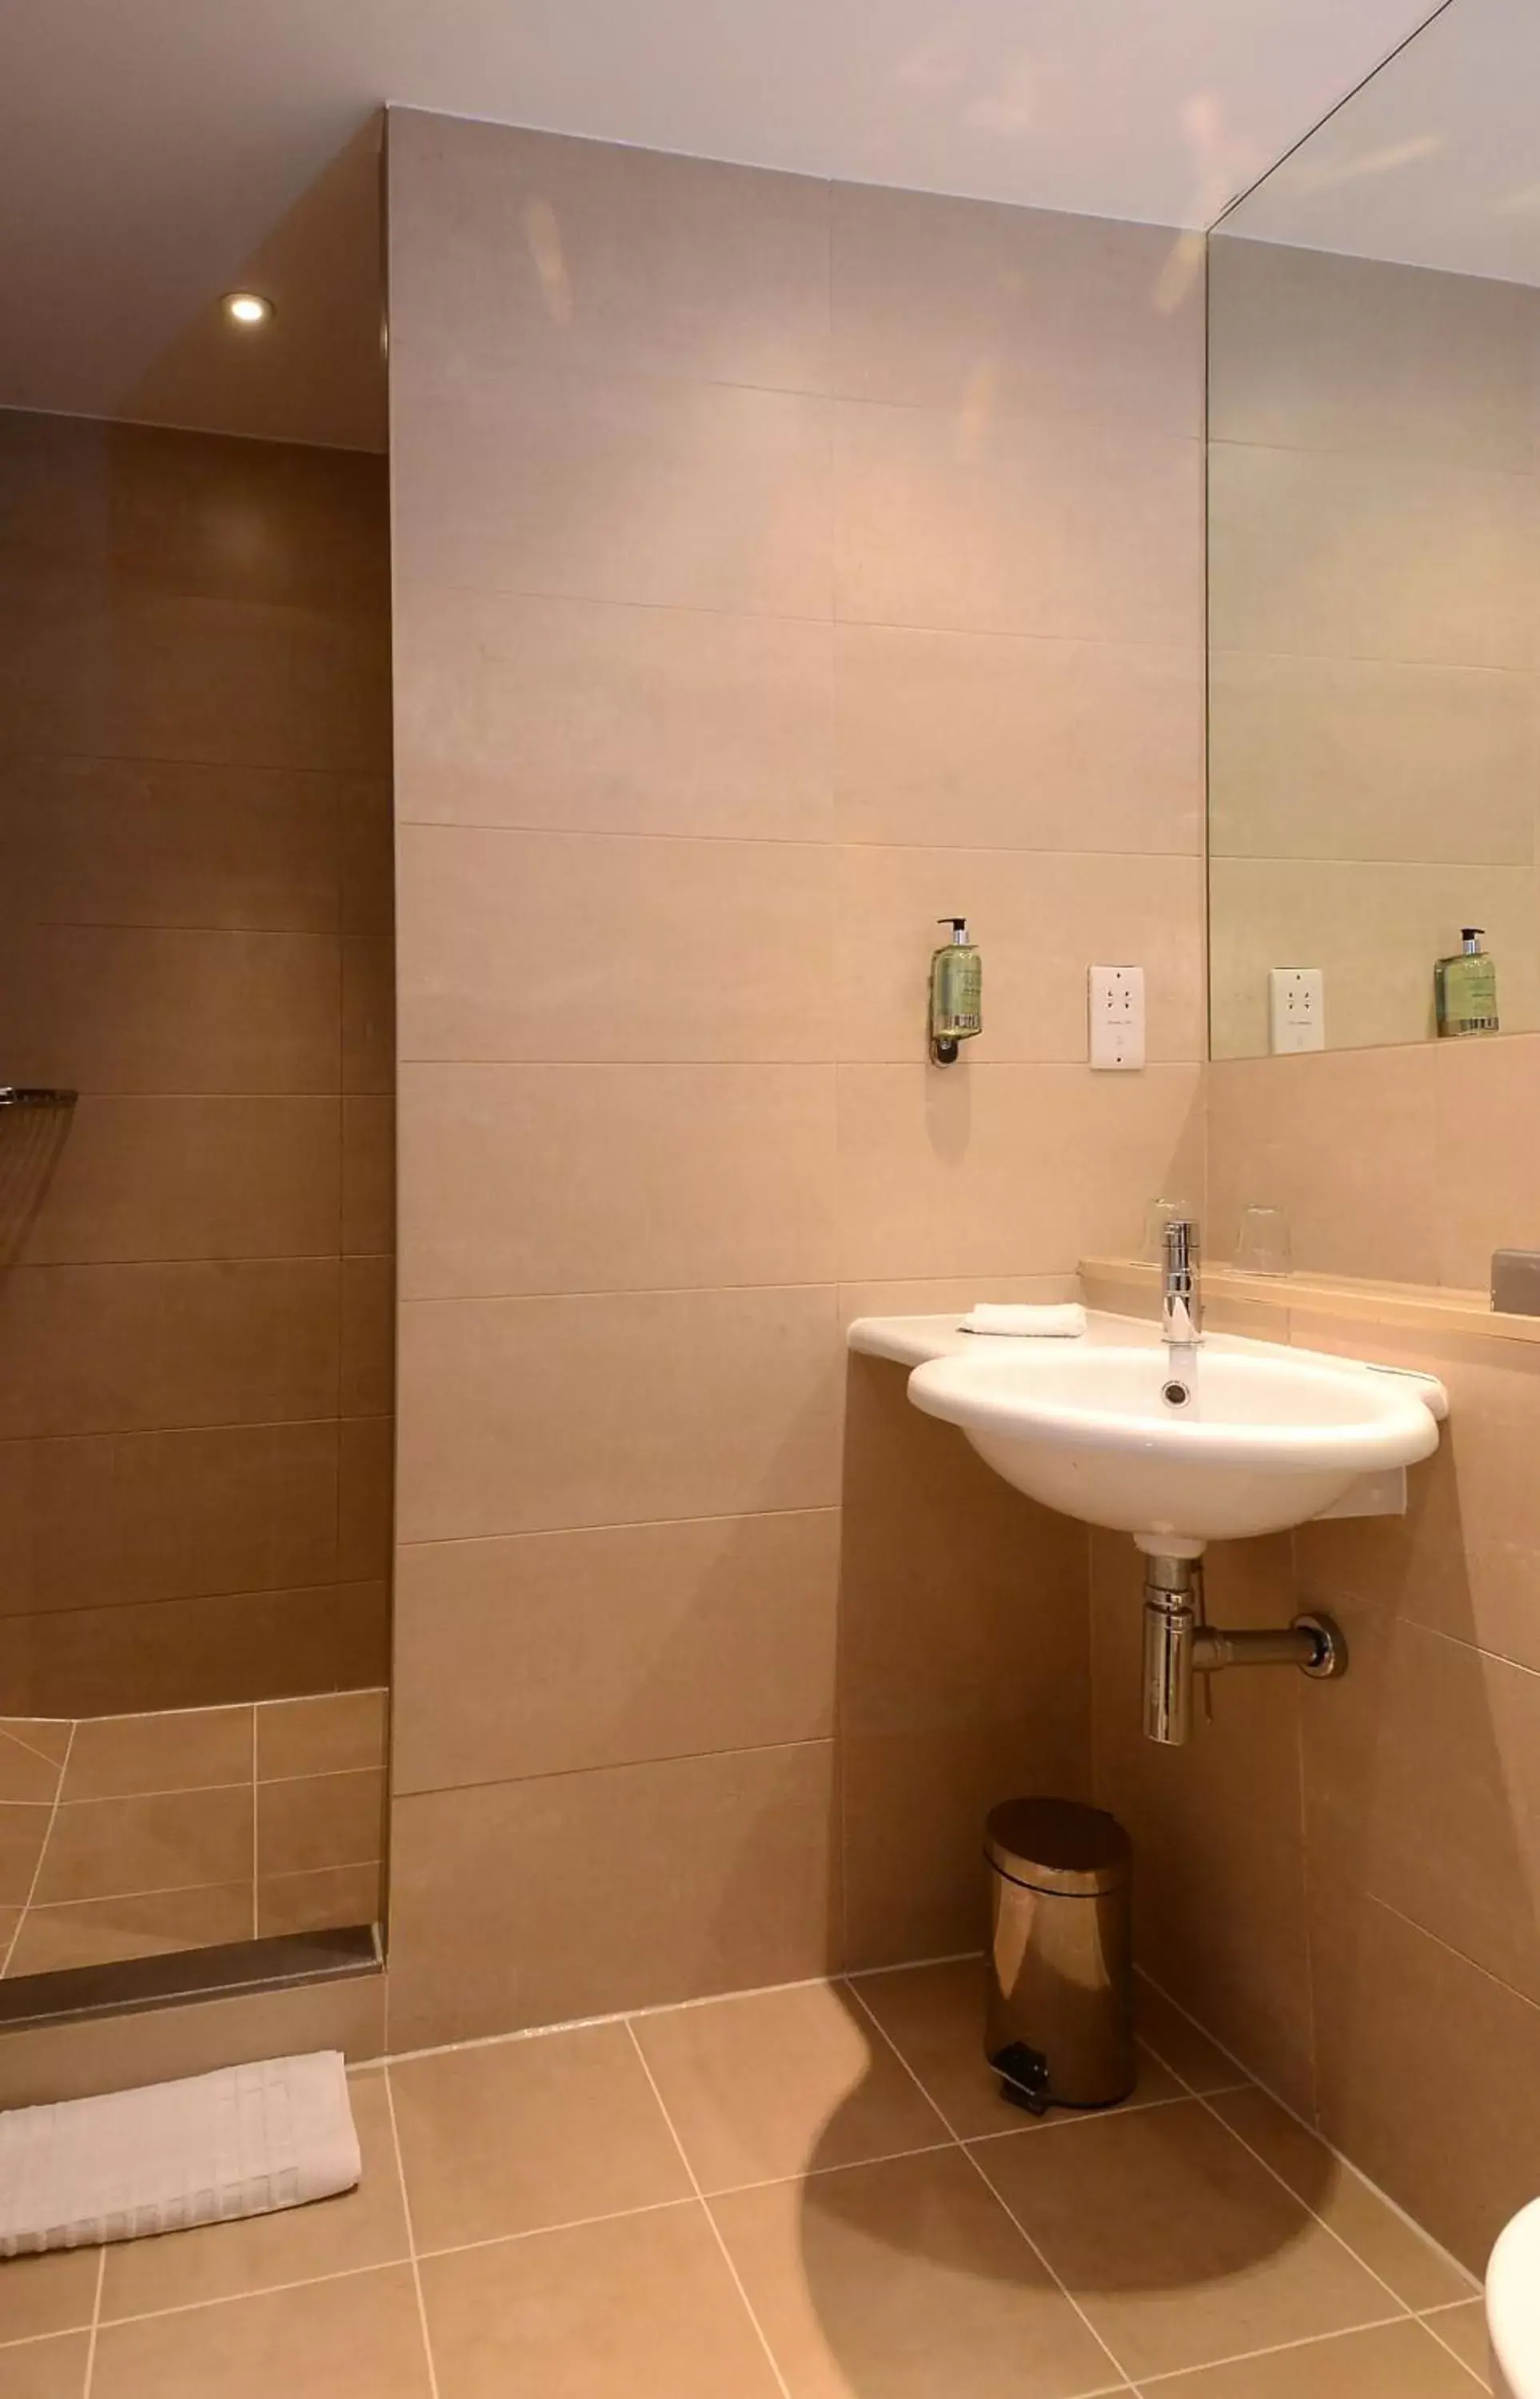 Bathroom in International Hotel Telford